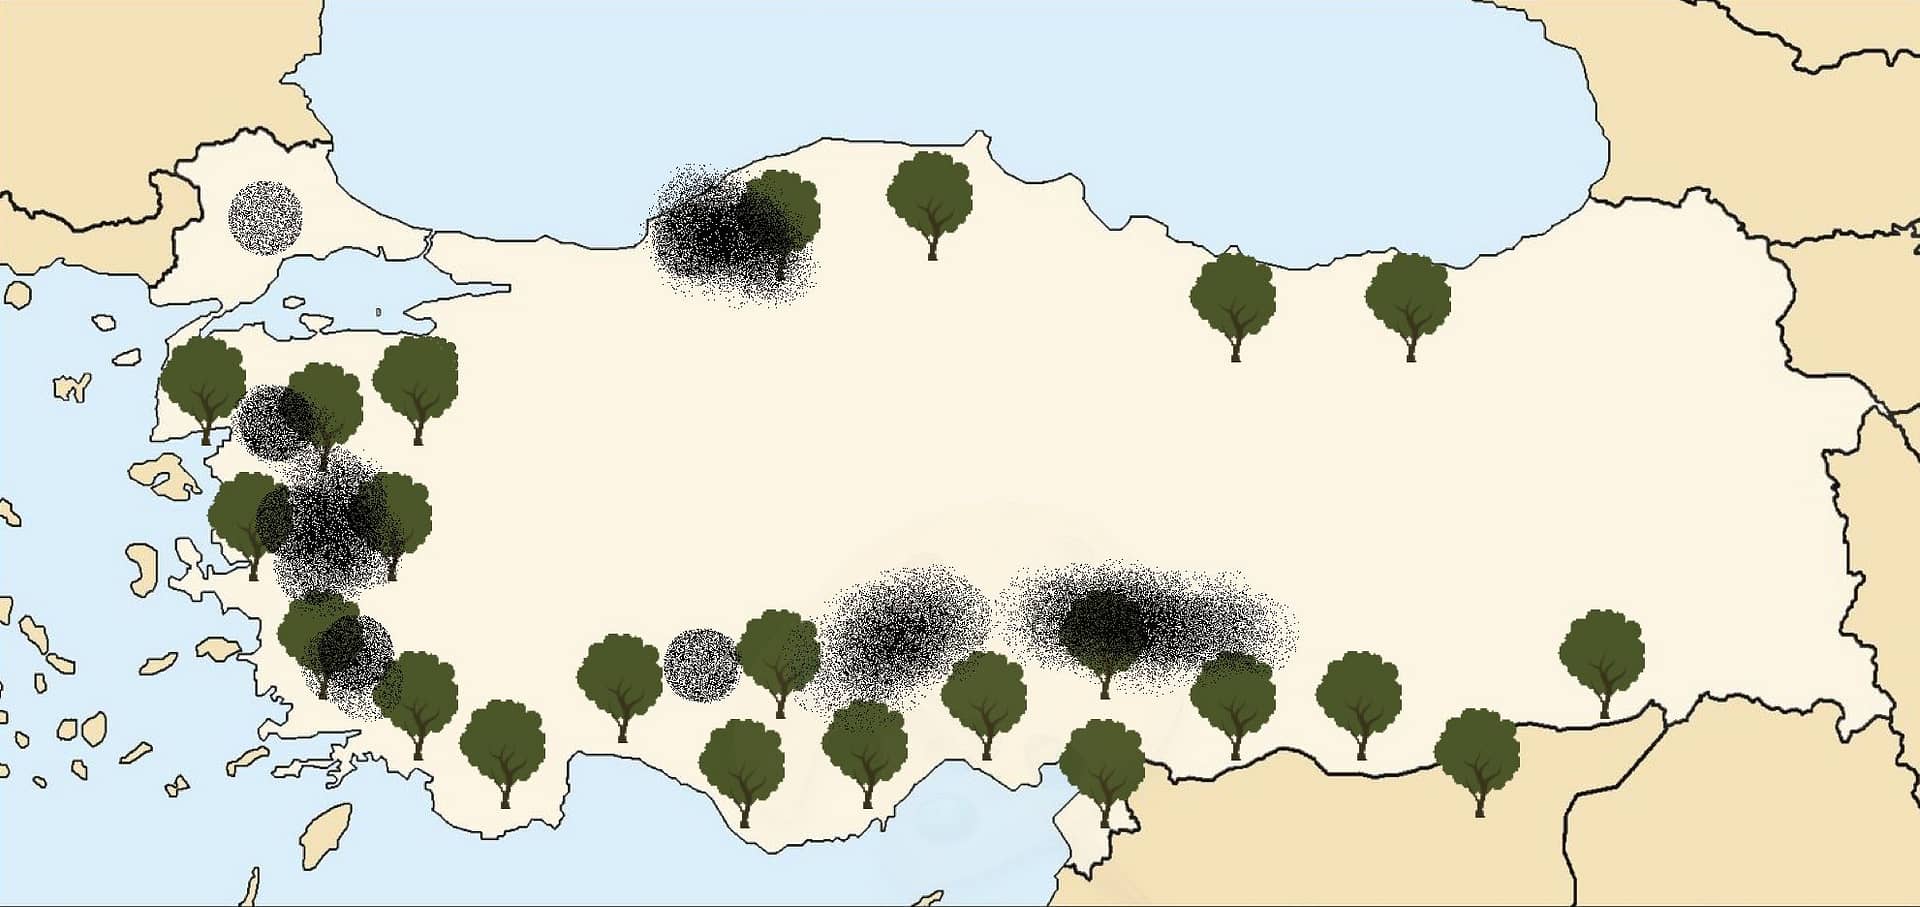 Azija-poslovanje-nova-regulacija-v-turčiji-dovoljenja-odstranitev-oljčnih dreves-za-kopanje-premoga-časi oljčnega olja